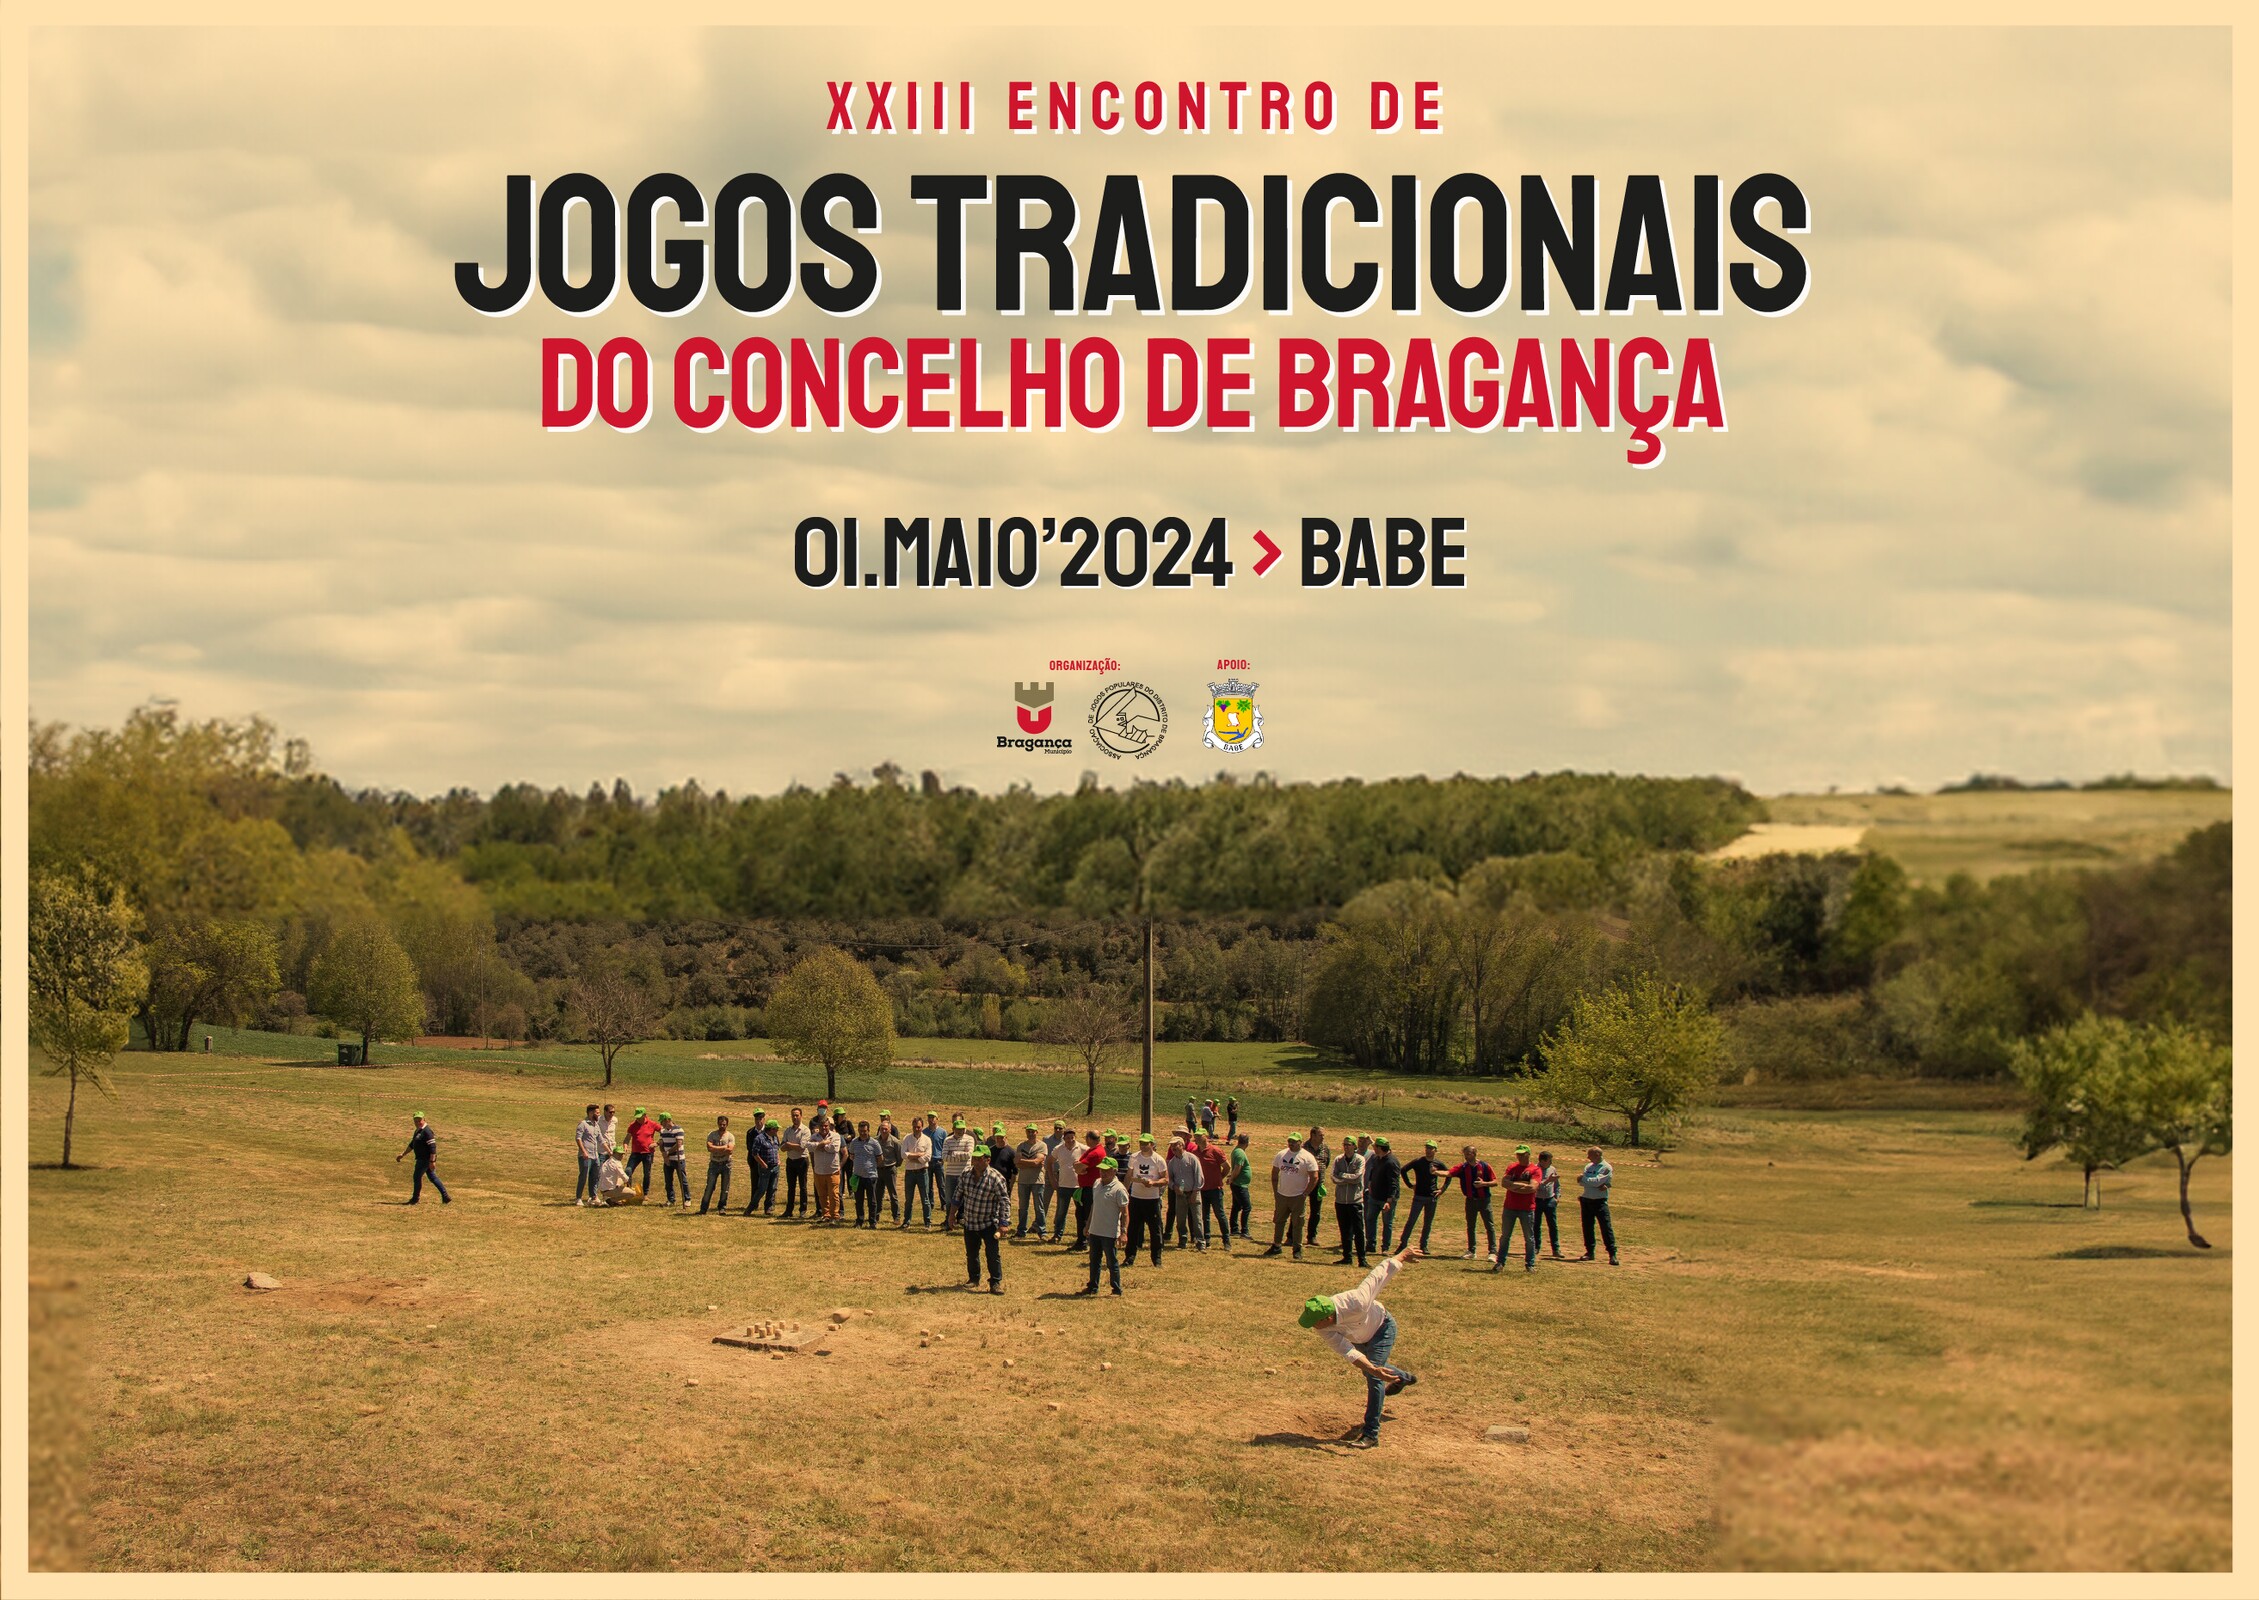 XXIII Encontro de Jogos Tradicionais do Concelho de Bragança